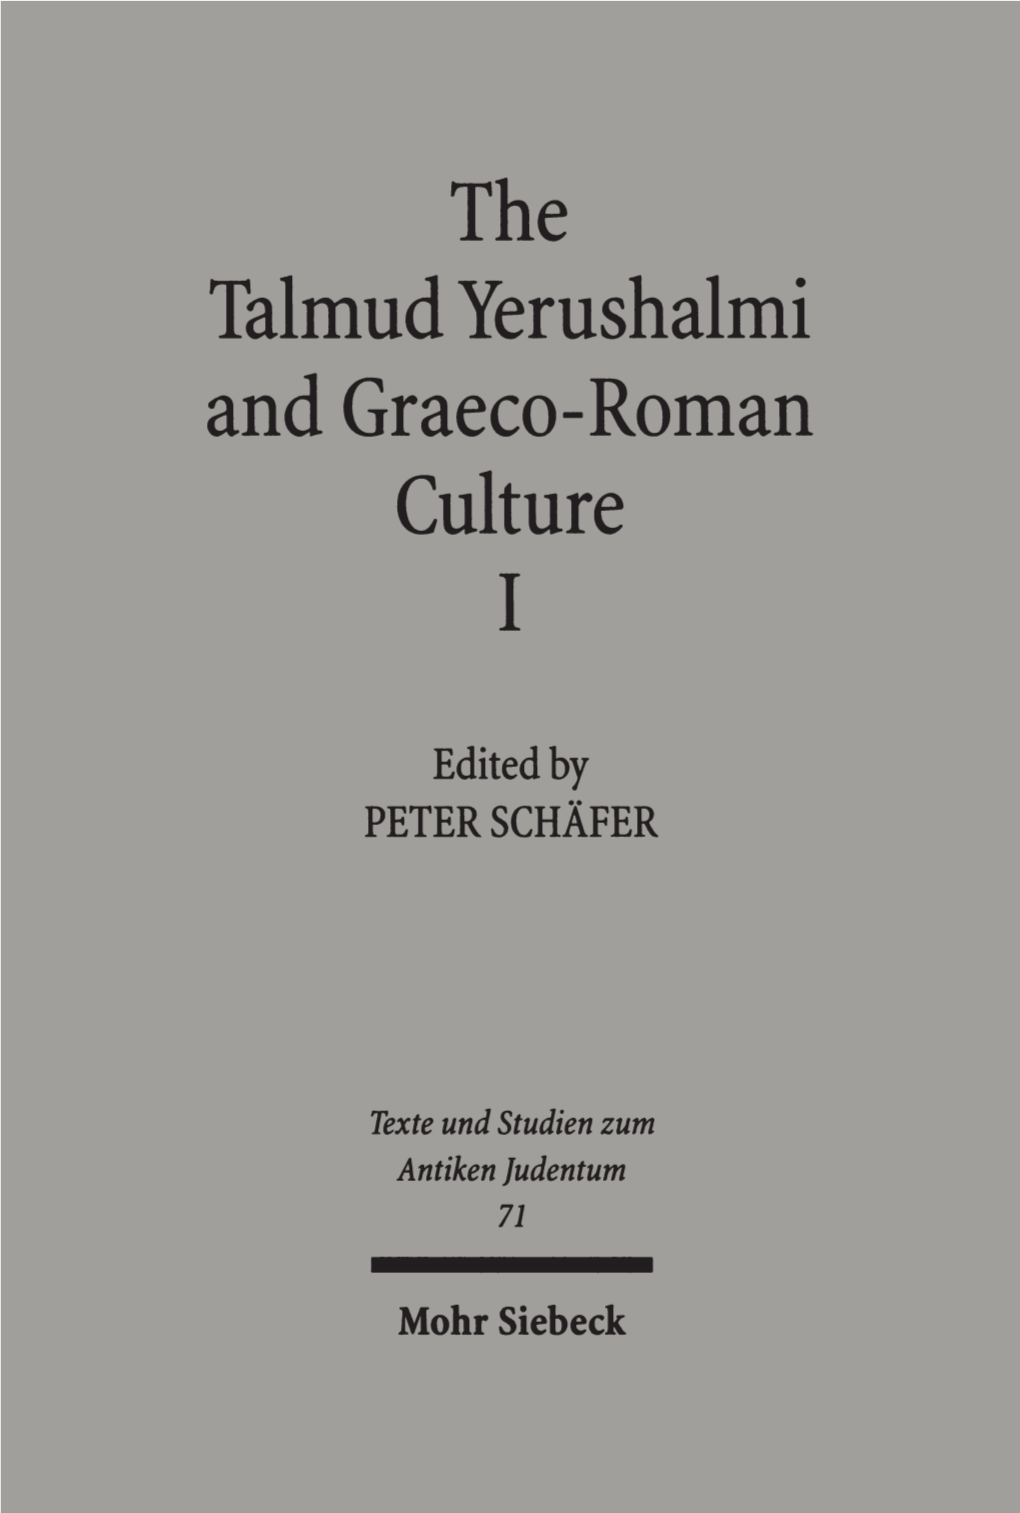 The Talmud Yerushalmi and Graeco-Roman Culture. I